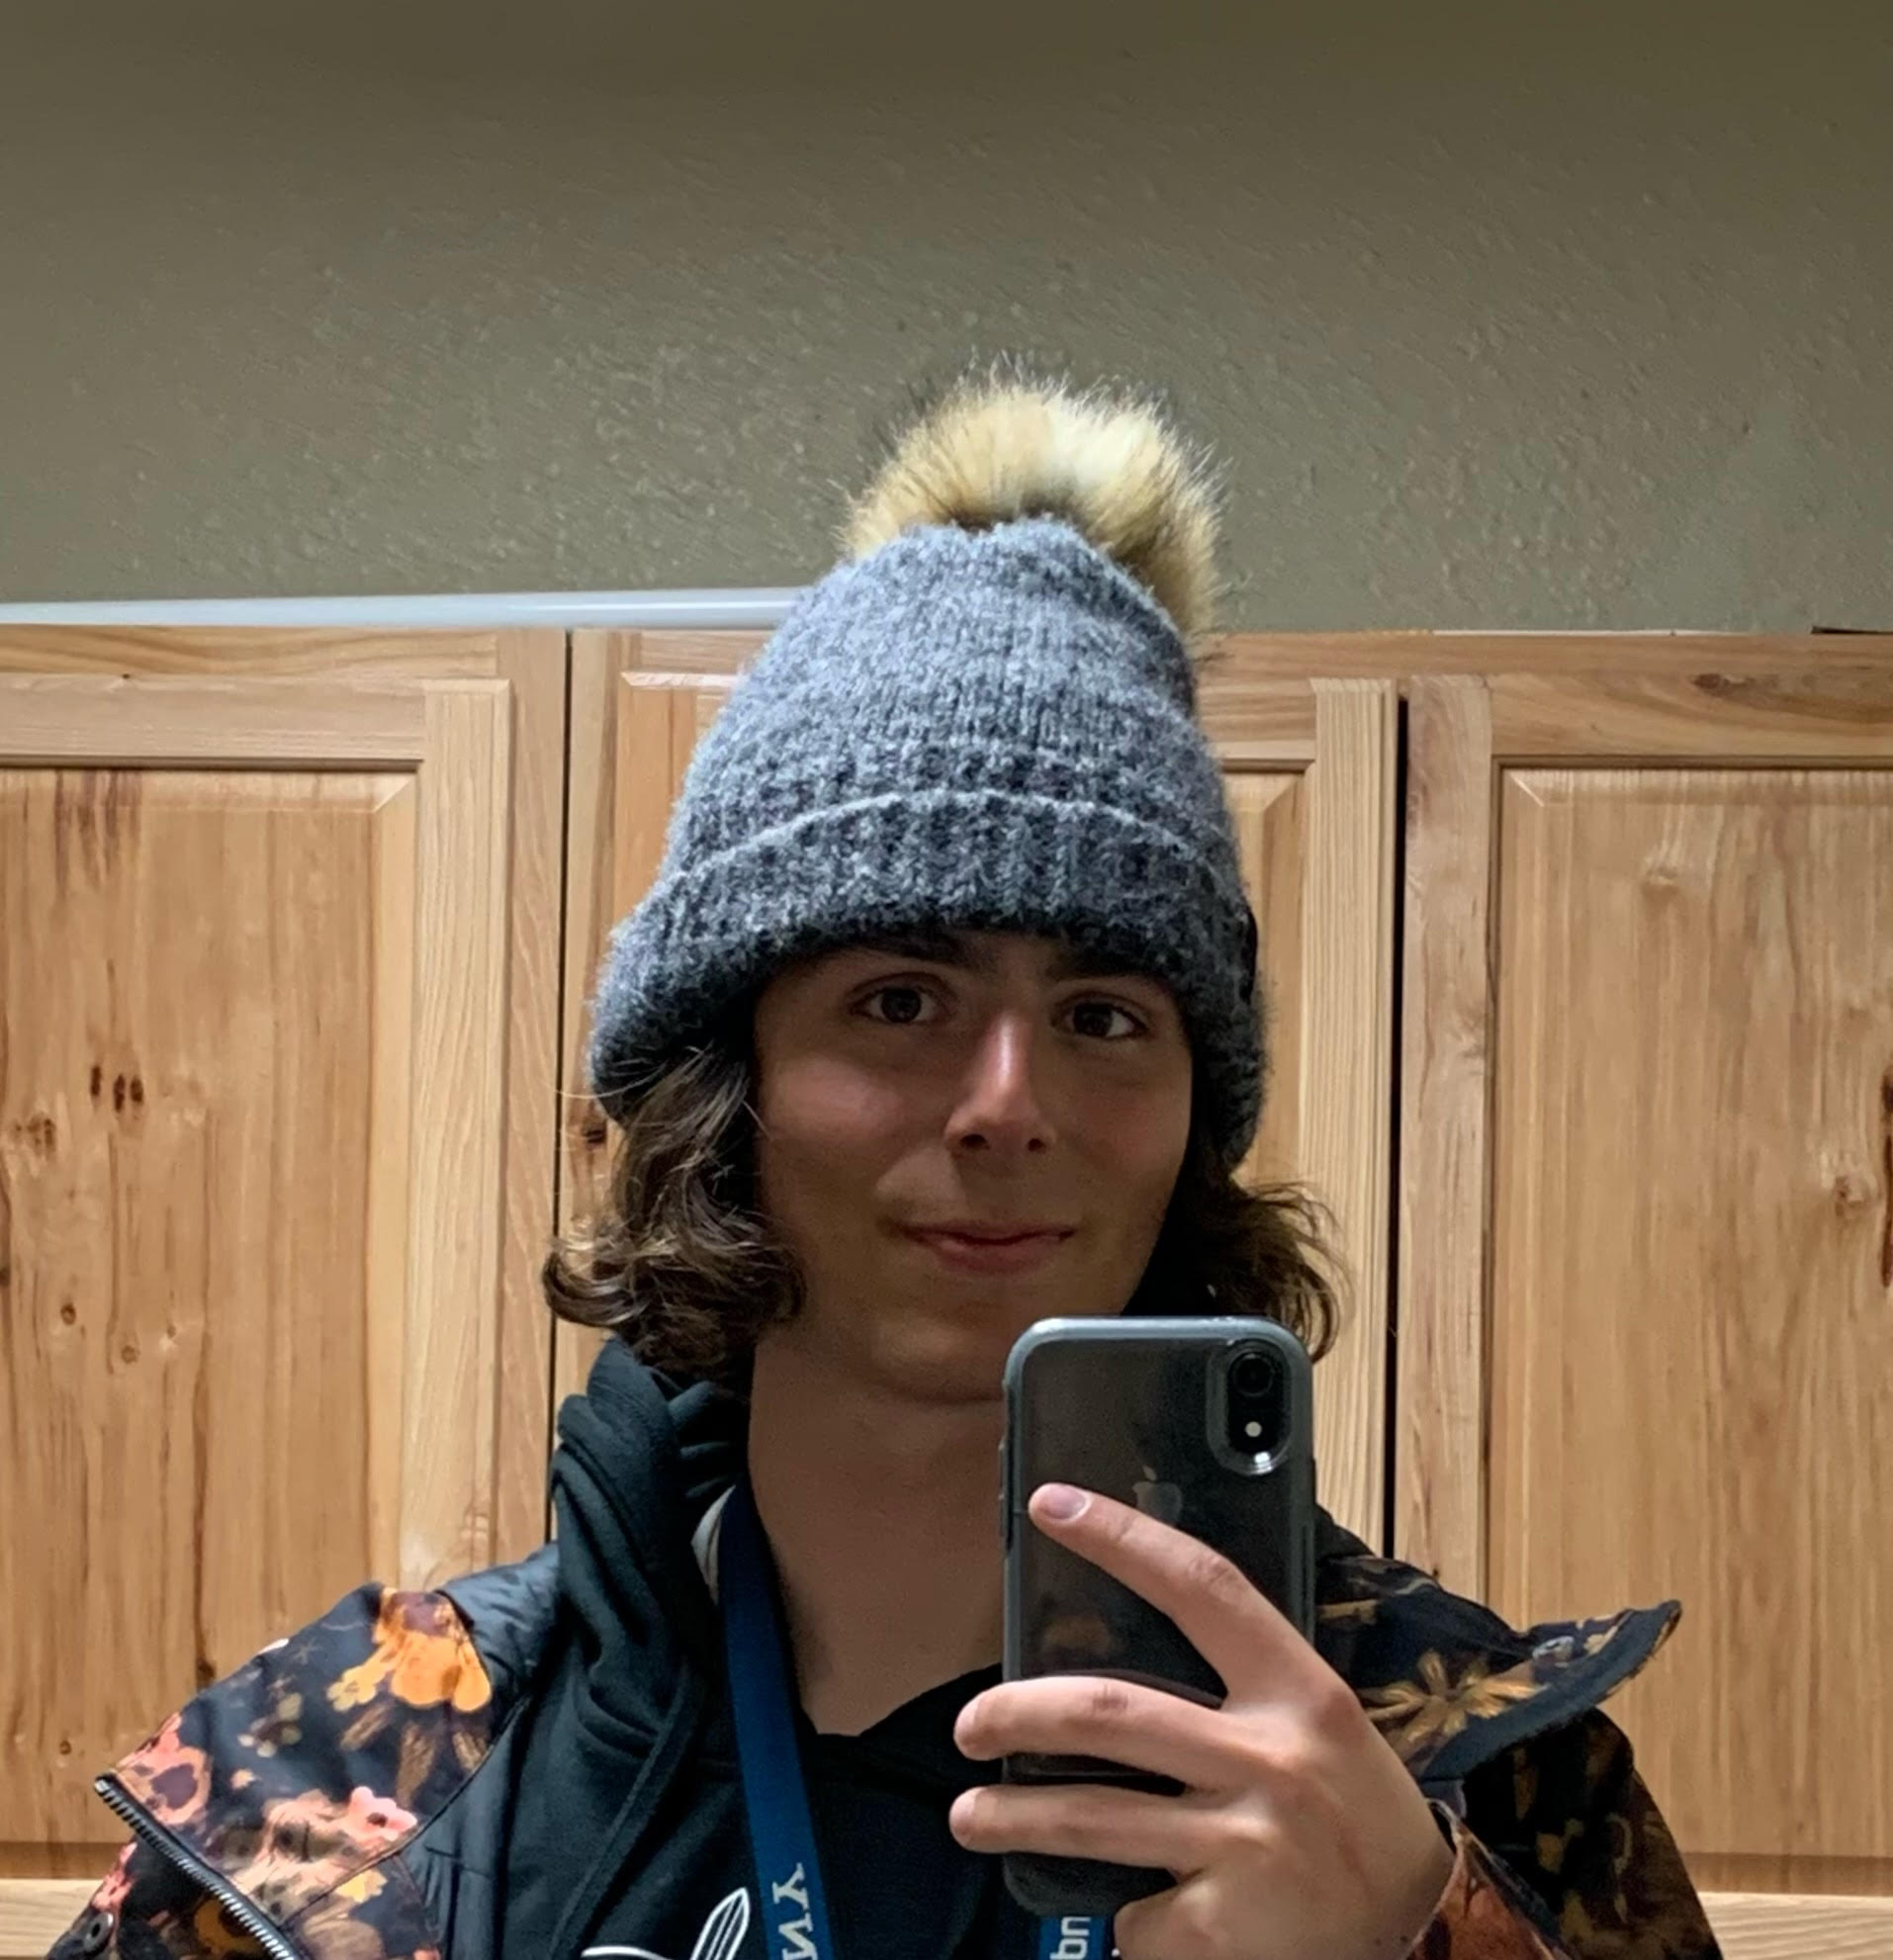 Jonah Calvo takes a mirror selfie wearing a winter hat